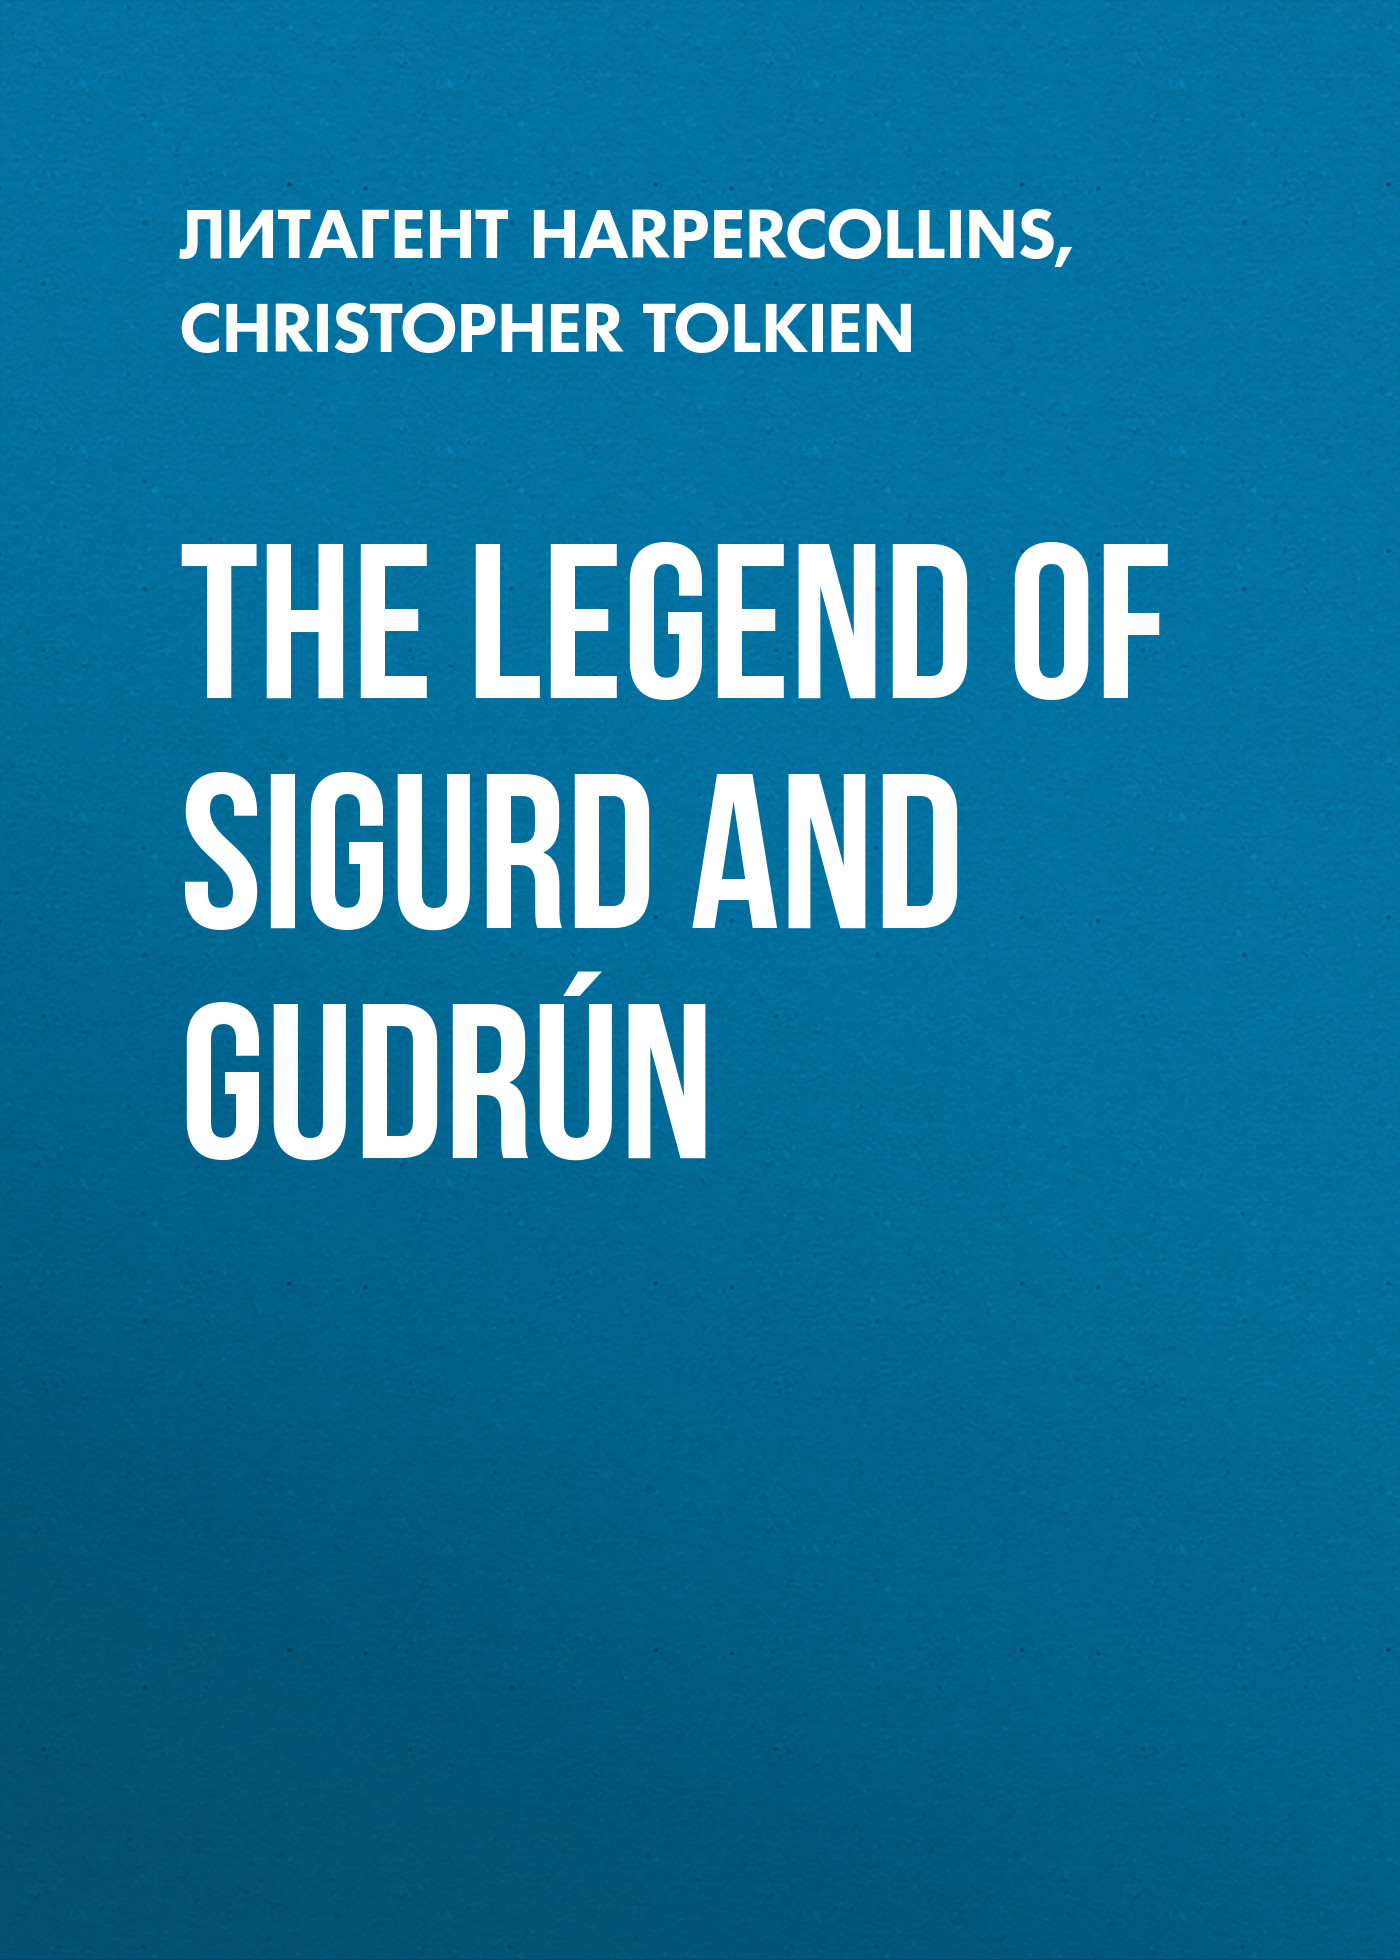 Книга The Legend of Sigurd and Gudrún из серии , созданная Christopher Tolkien, может относится к жанру Историческая литература, Героическая фантастика, Зарубежное фэнтези, Современная зарубежная литература, Историческое фэнтези, Фэнтези про драконов, Зарубежная психология. Стоимость электронной книги The Legend of Sigurd and Gudrún с идентификатором 39748081 составляет 566.47 руб.